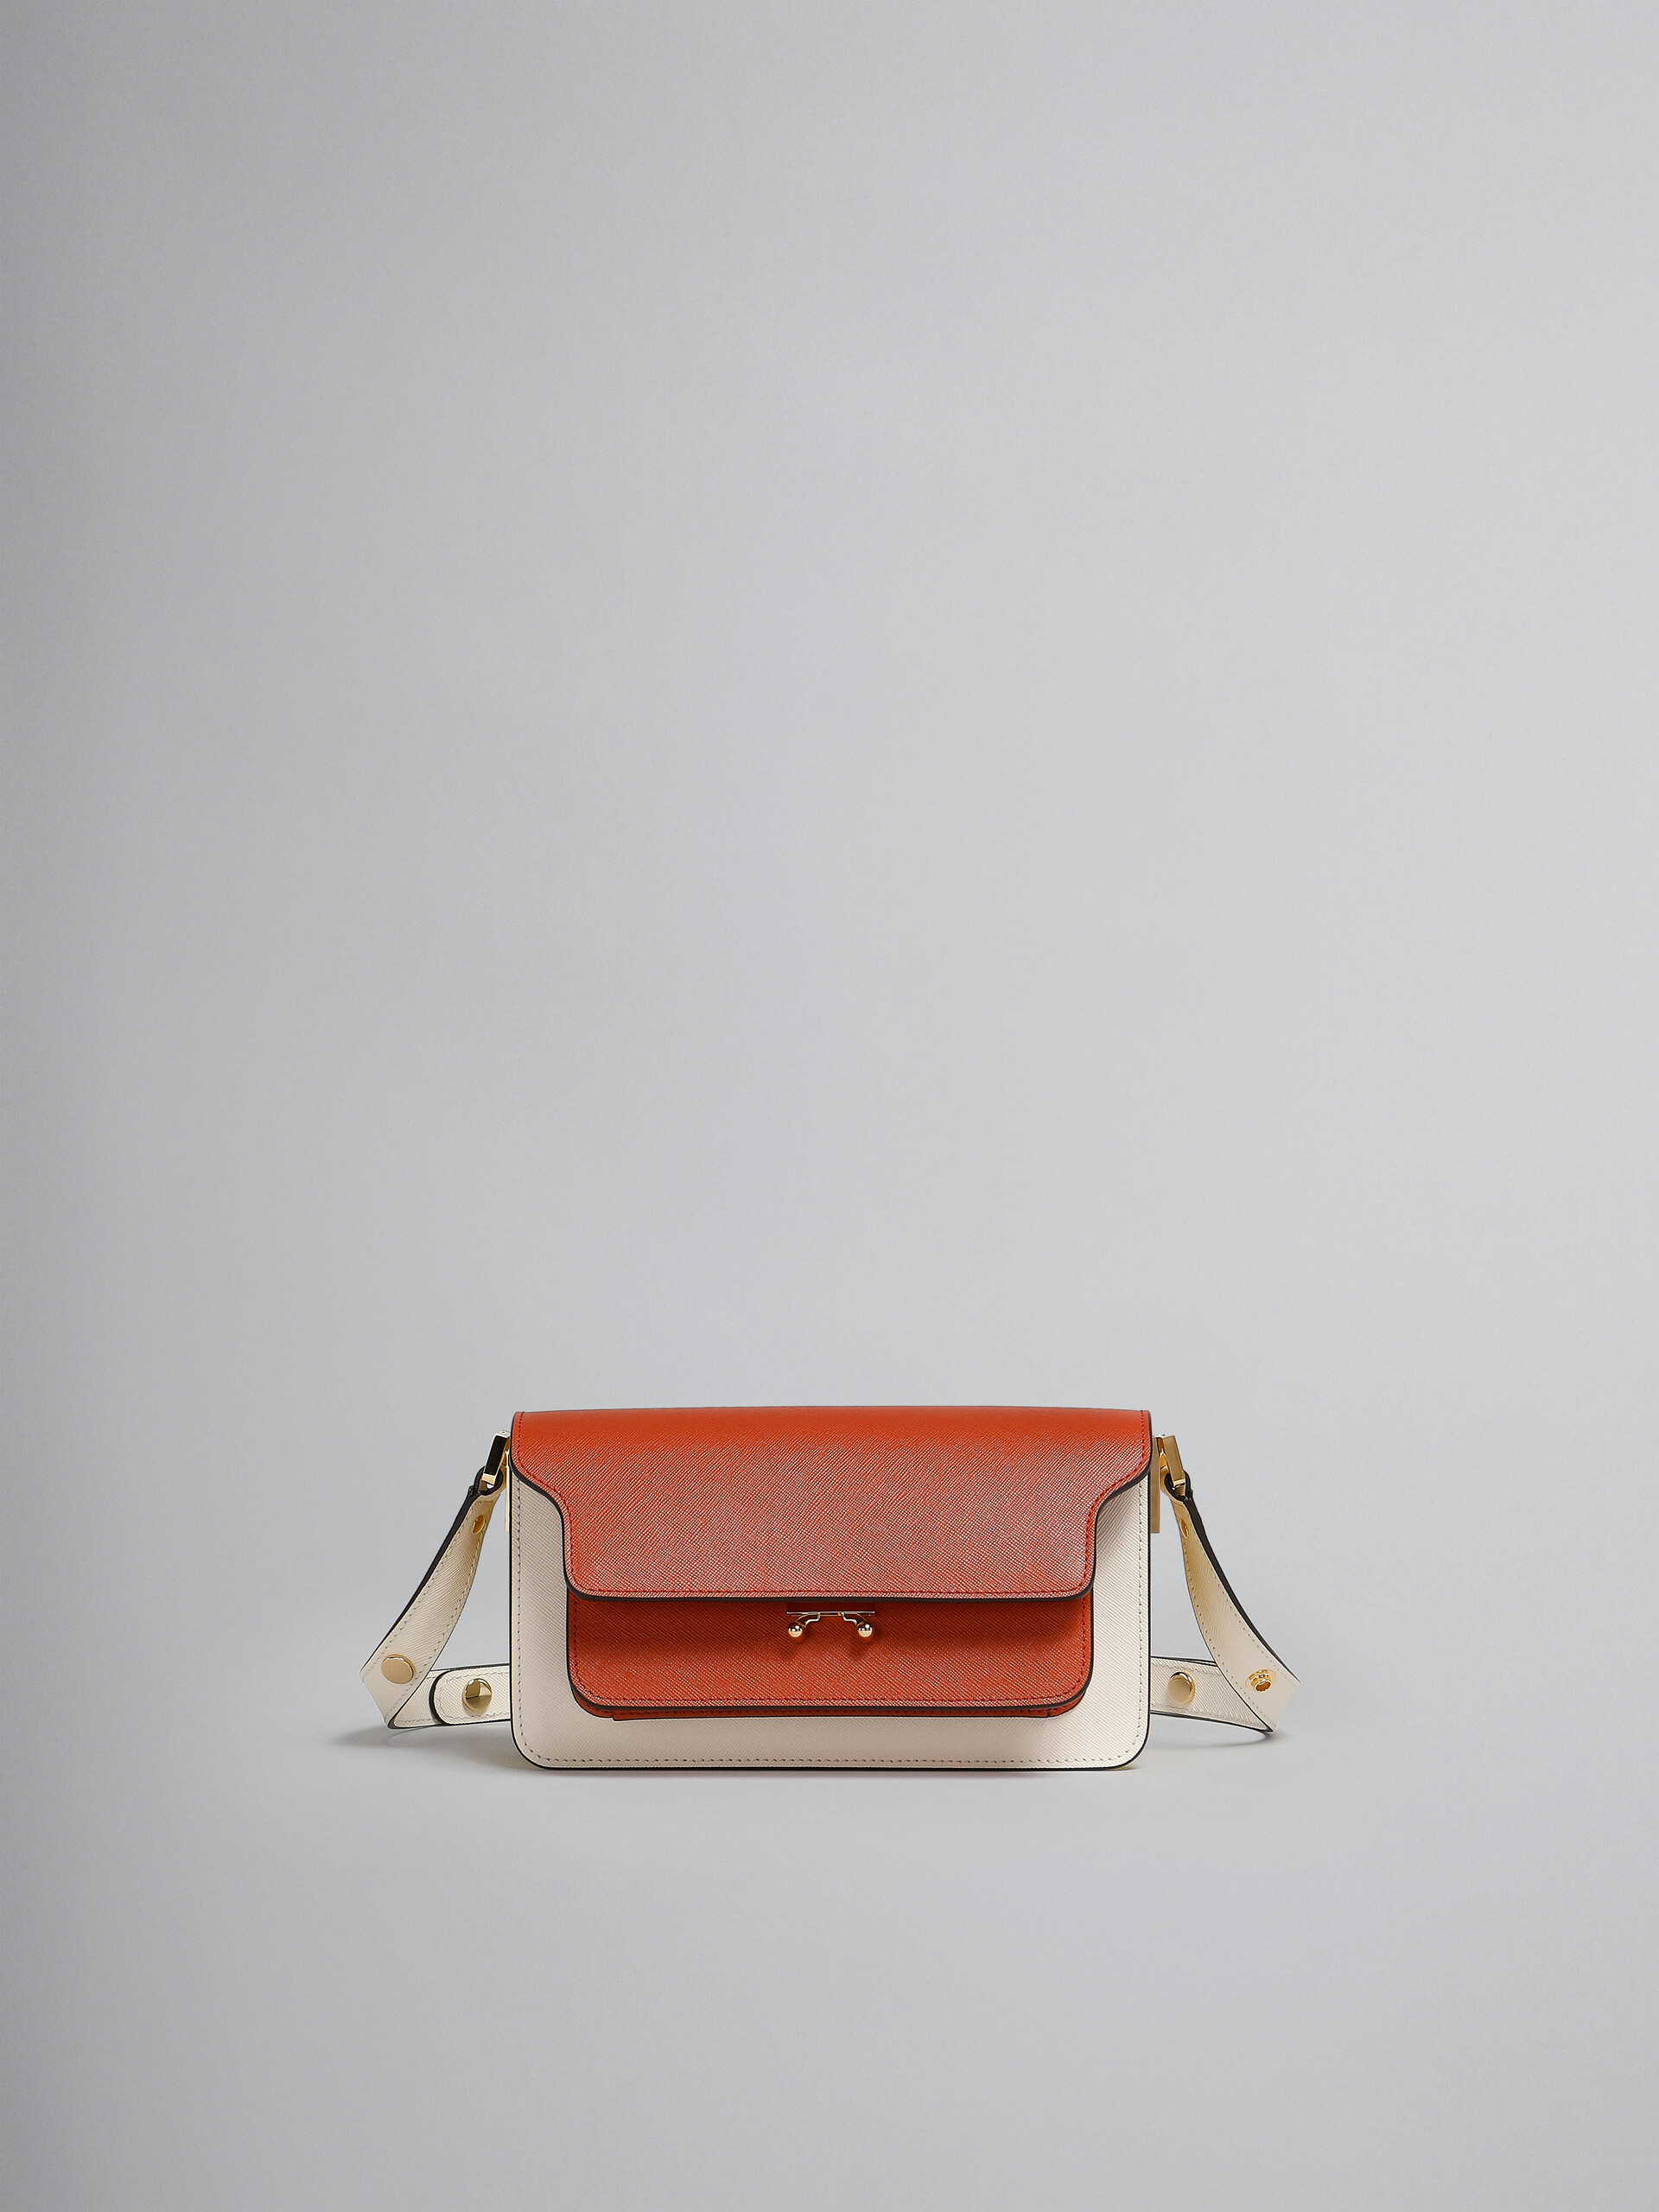 Trunk Bag E/W in pelle saffiano marrone - Borse a spalla - Image 1